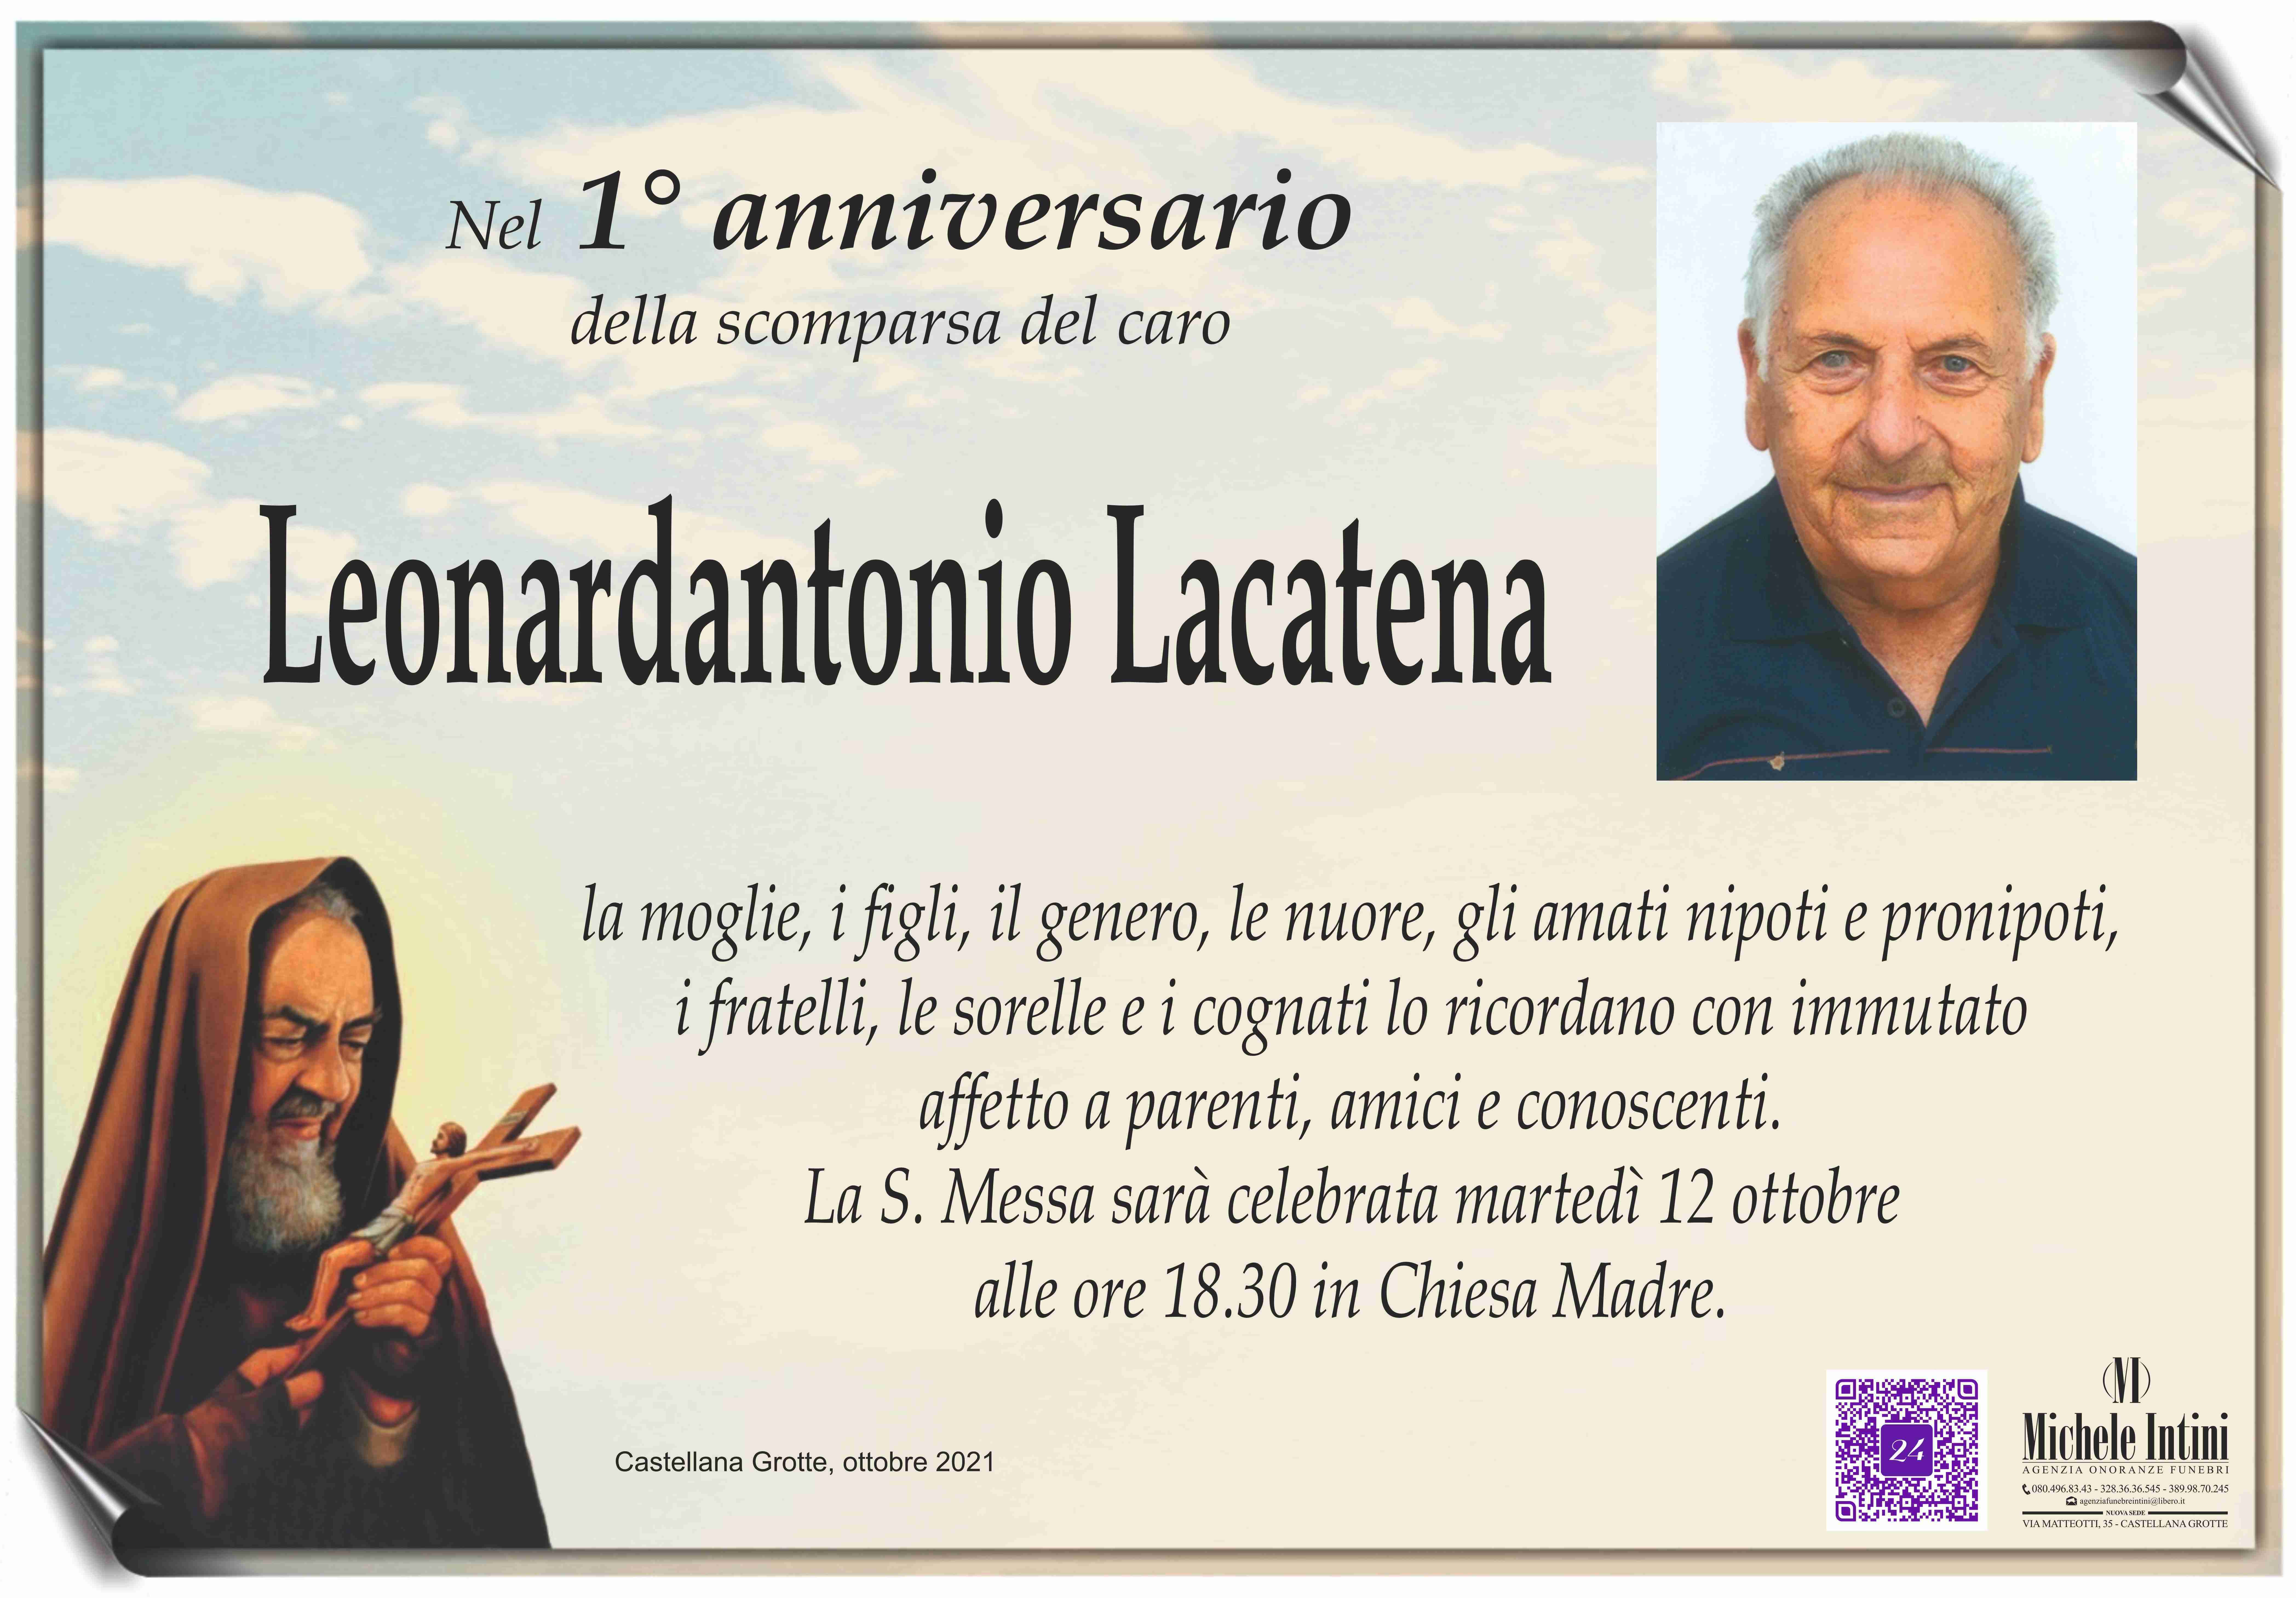 Leonardantonio Lacatena